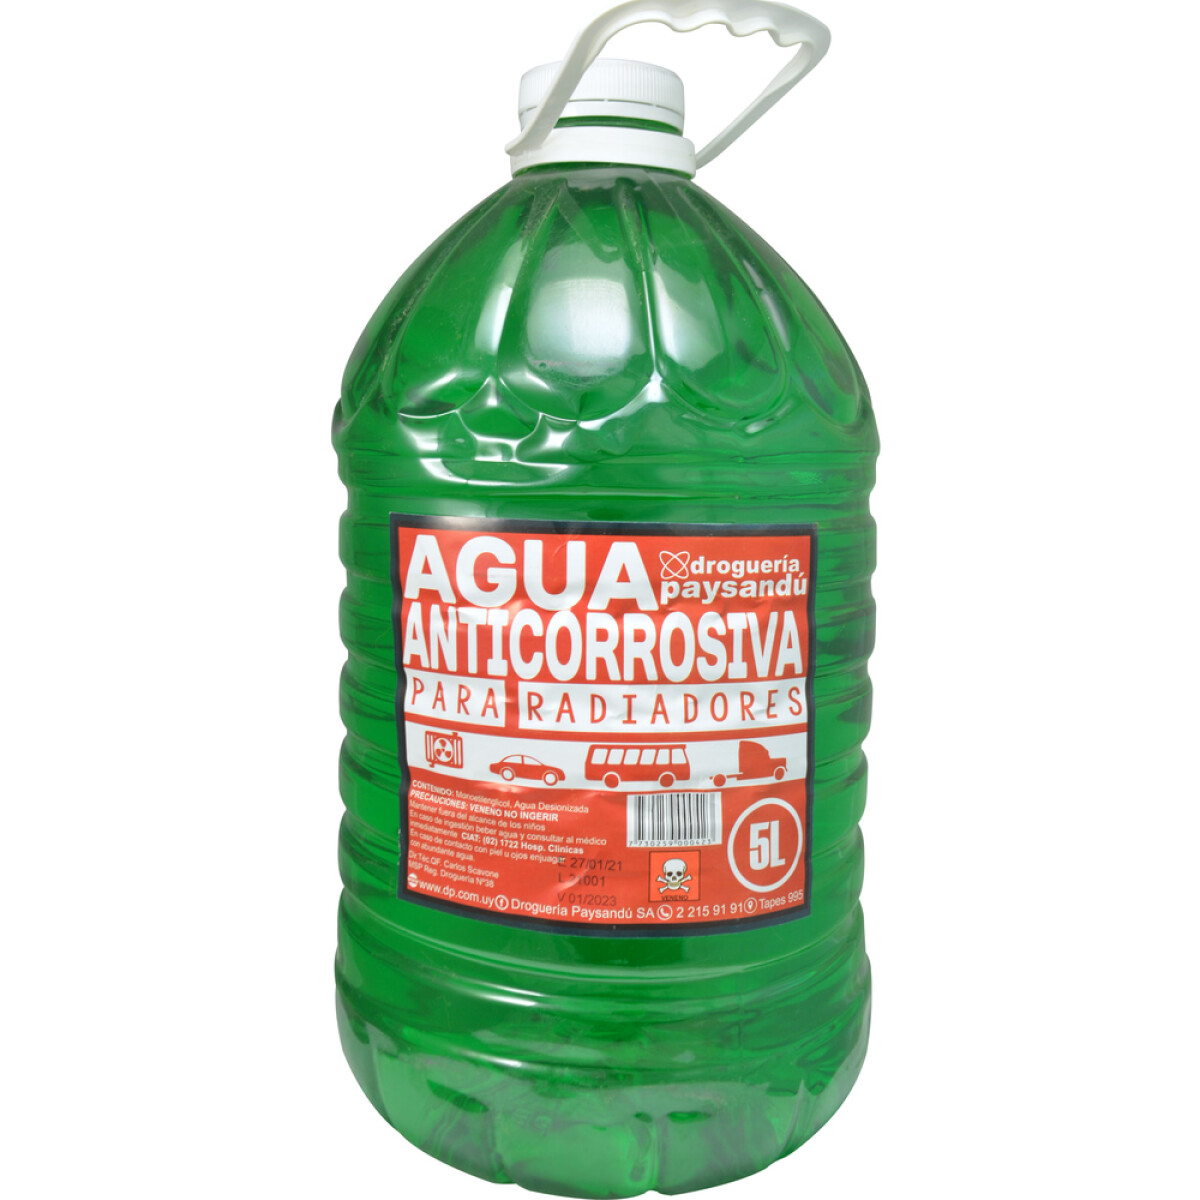 Agua Anticorrosiva para Radiadores 5 L 